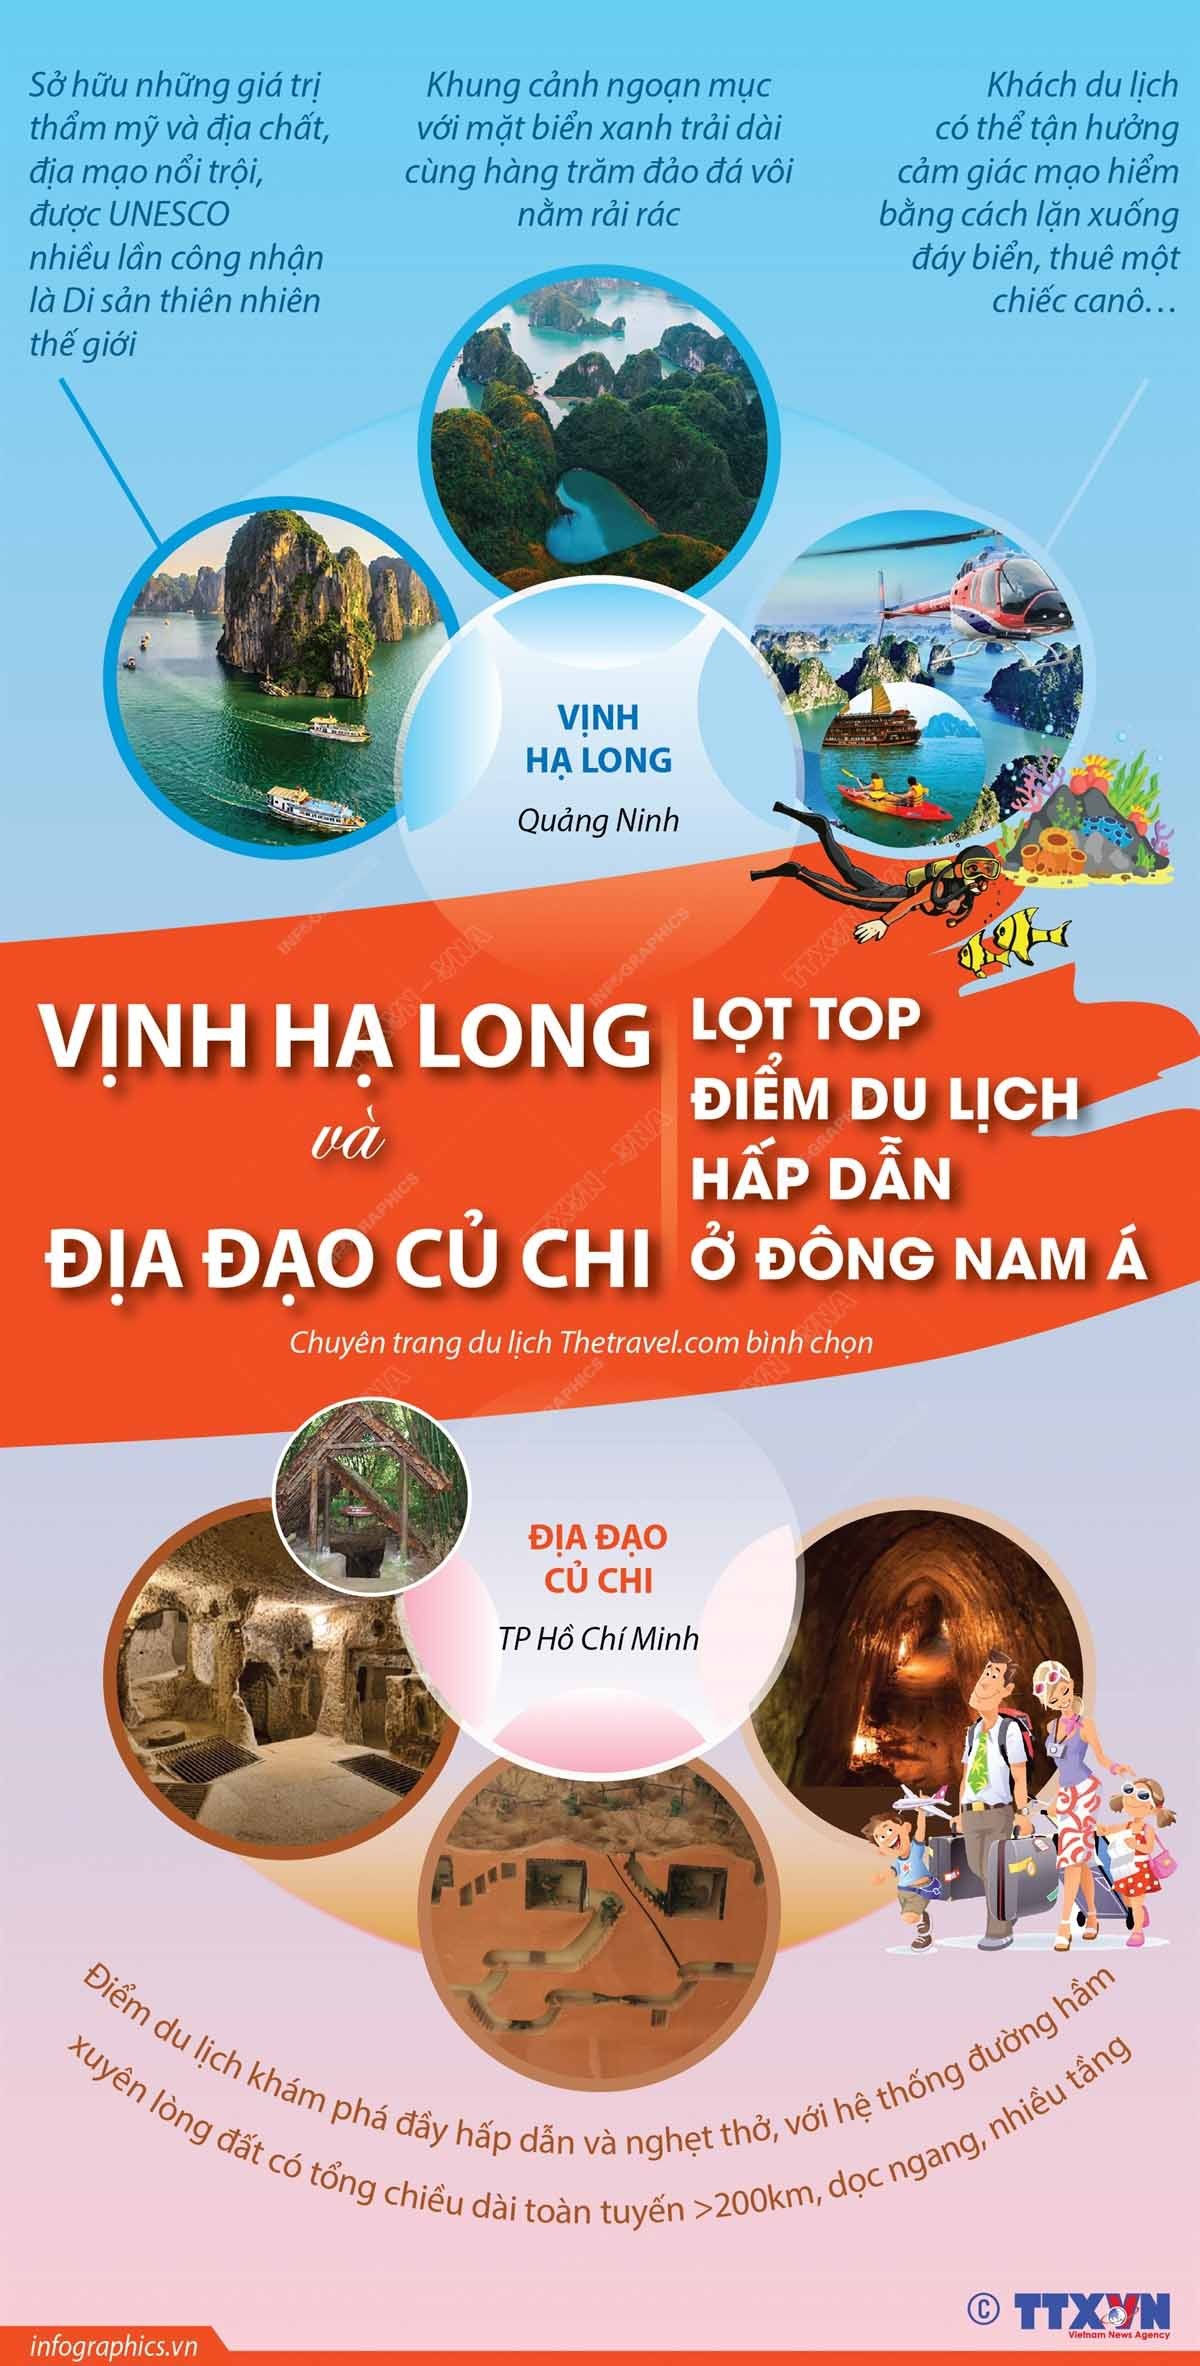 Hai điểm đến của Việt Nam lọt top điểm du lịch hấp dẫn ở Đông Nam Á